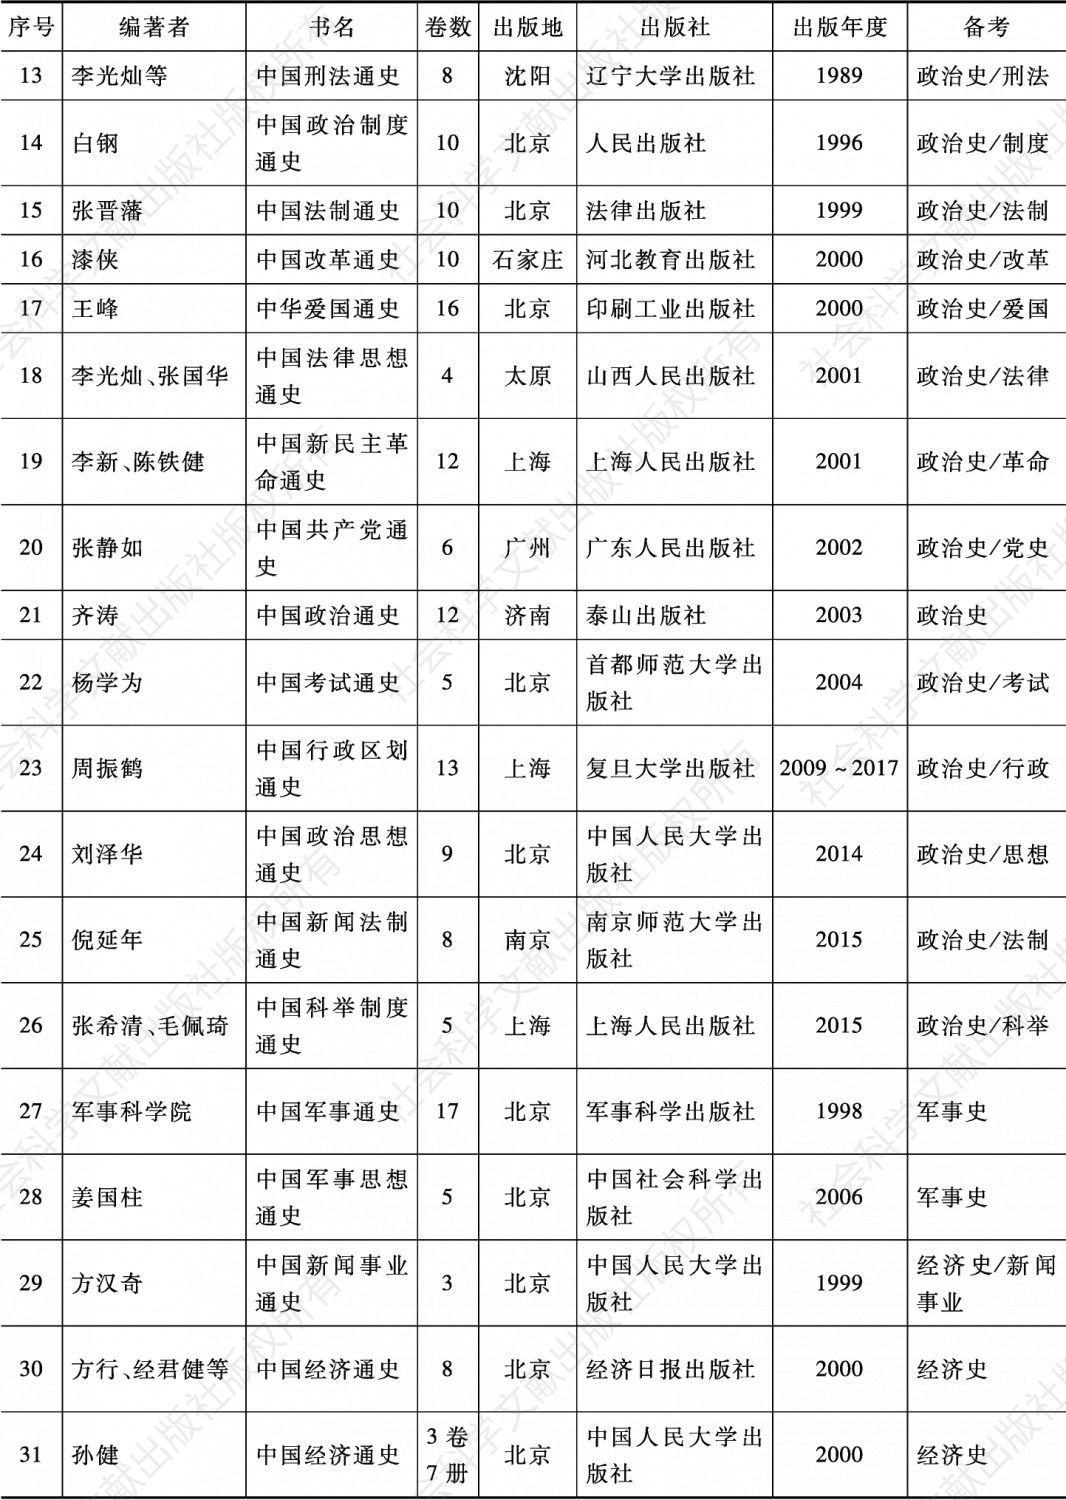 附表 改革开放时期（1980～2017）中国的大规模通史出版情况-续表1